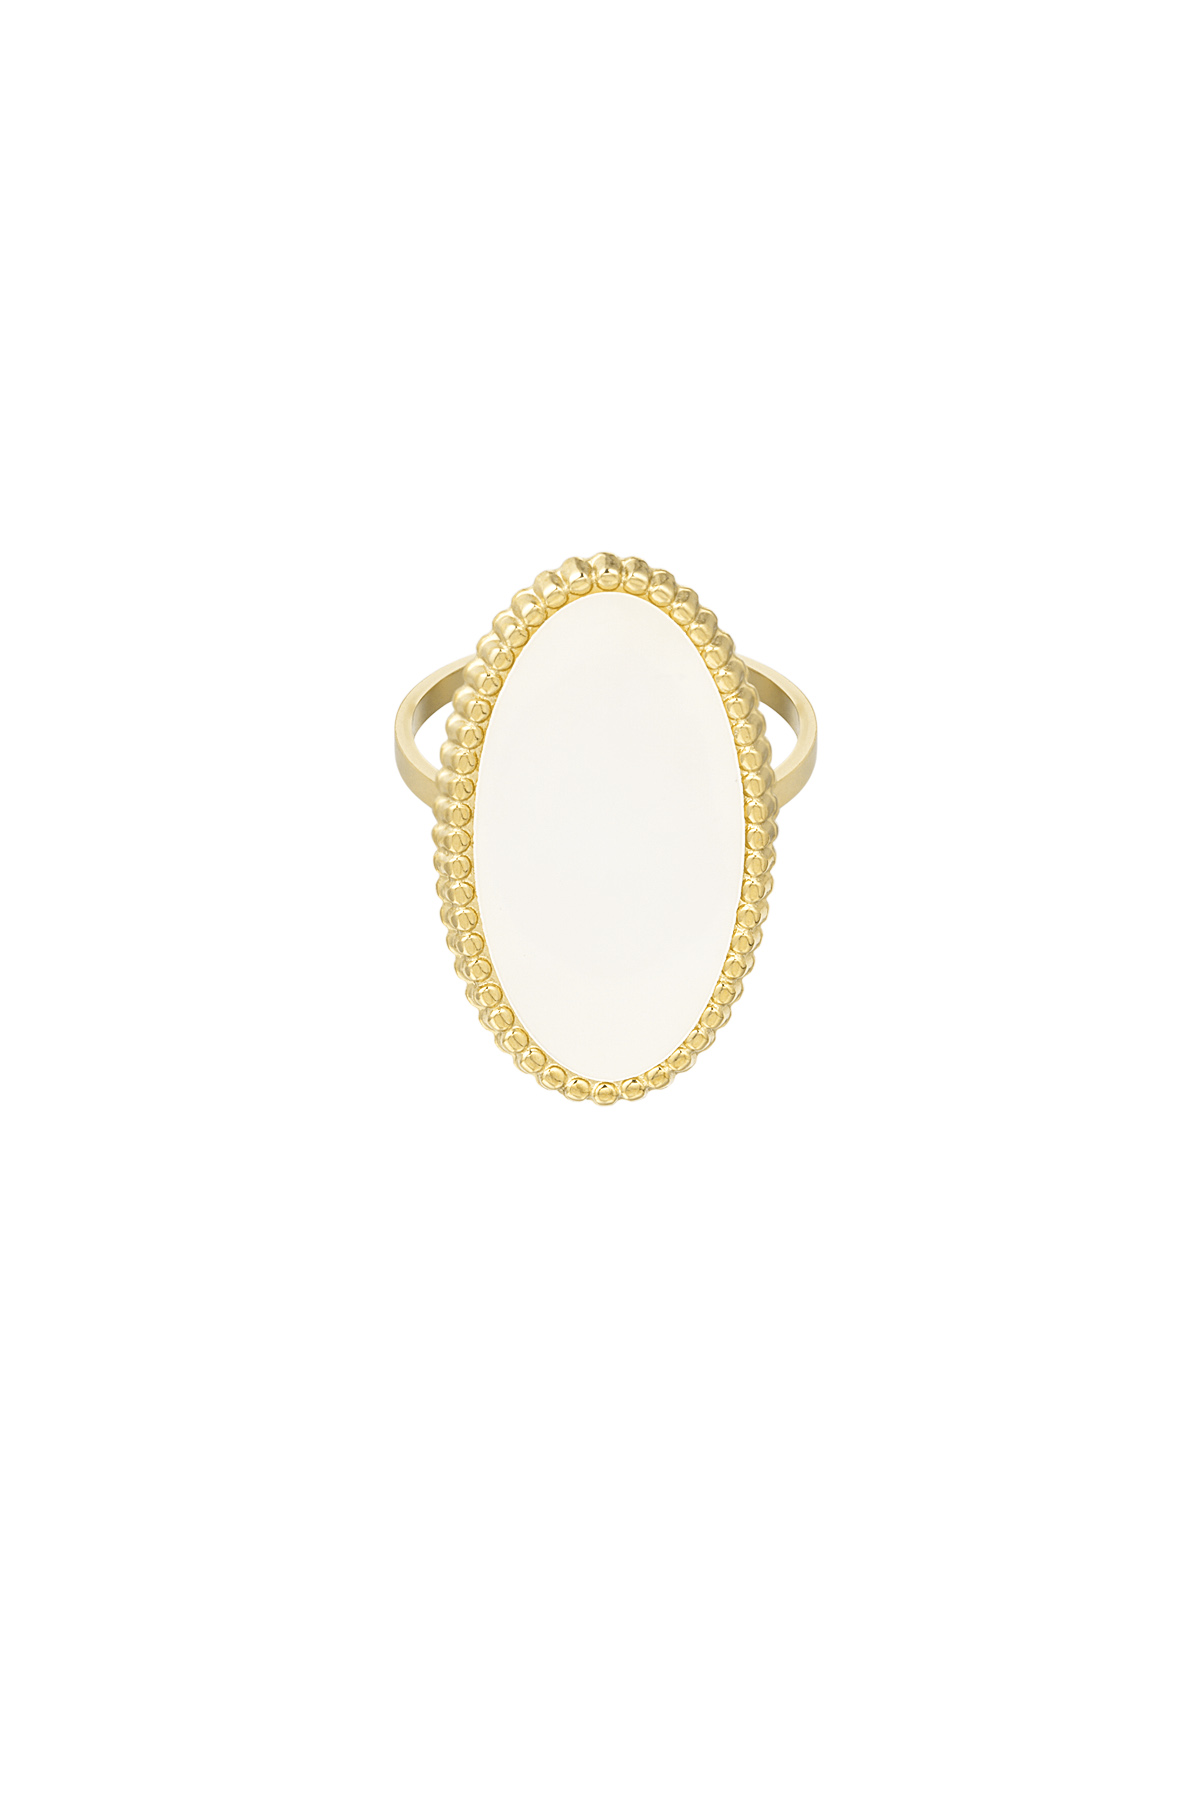 Ring vintage edge - gold/white h5 